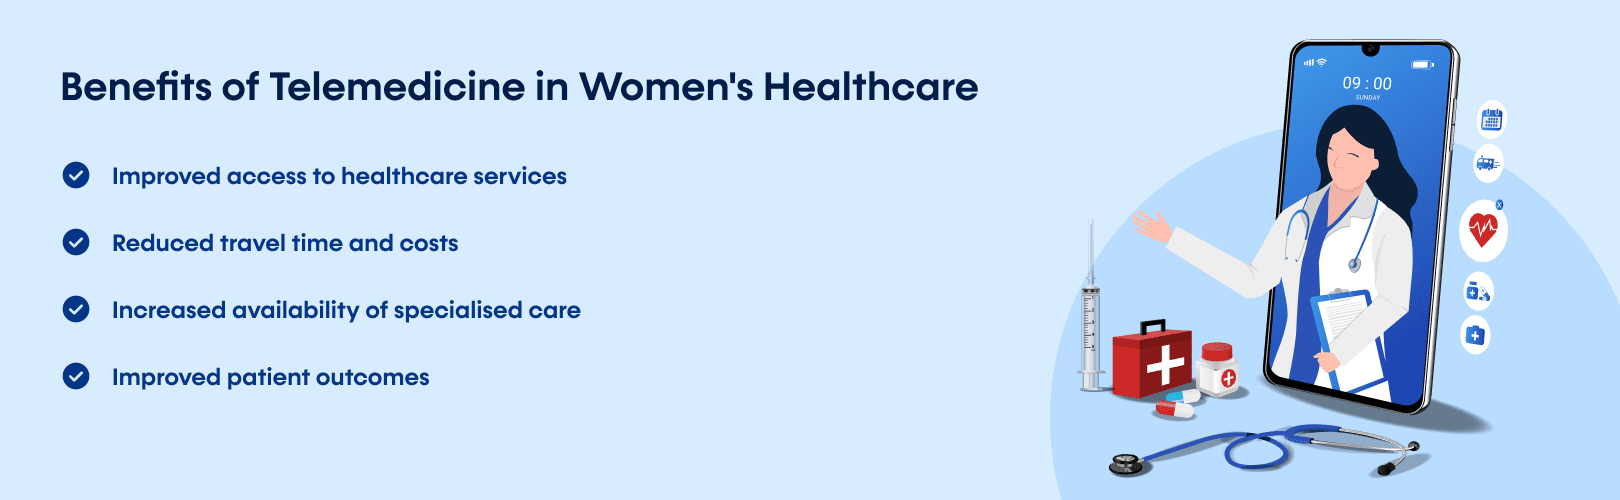 Benefits of Telemedicine in Women's Healthcare